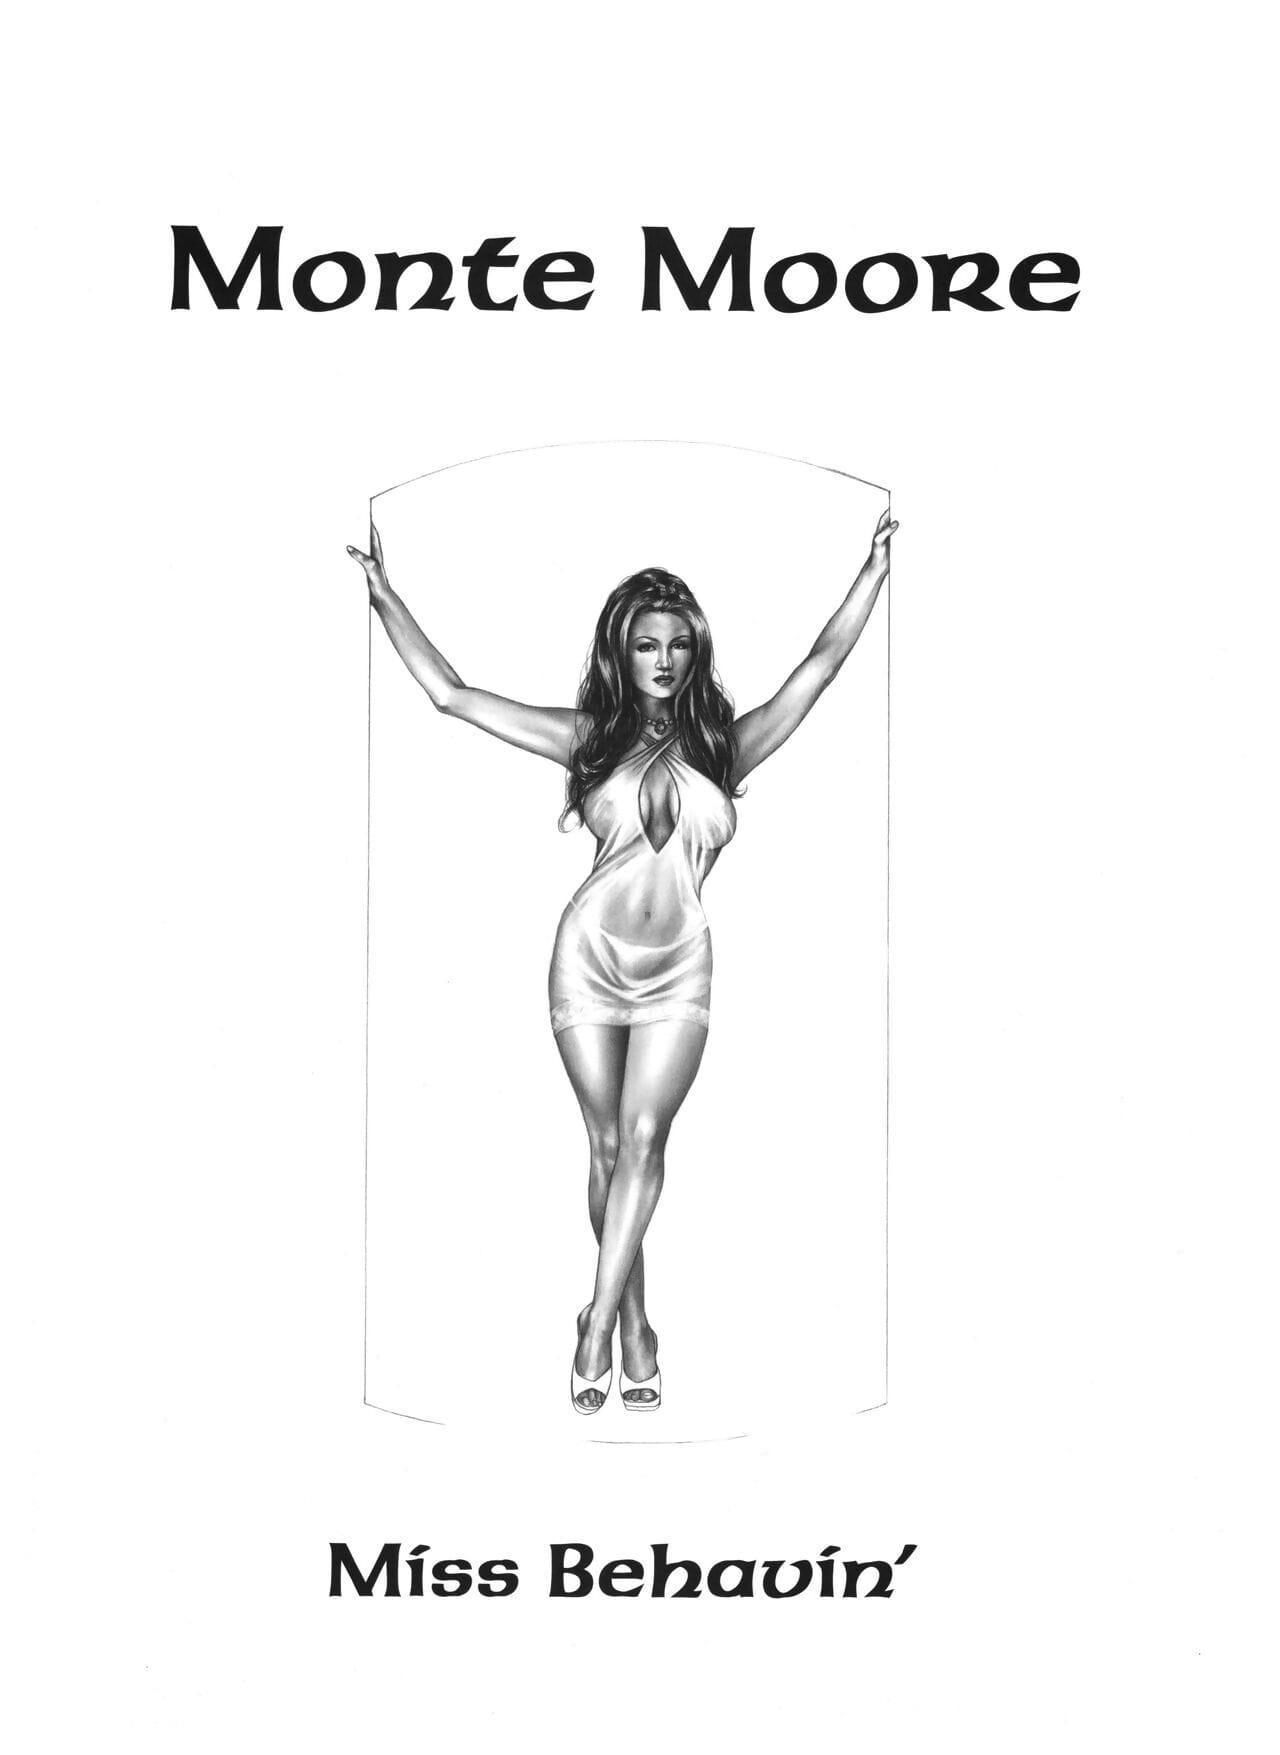 Art Premiere #09 - Monte M. Moore page 1